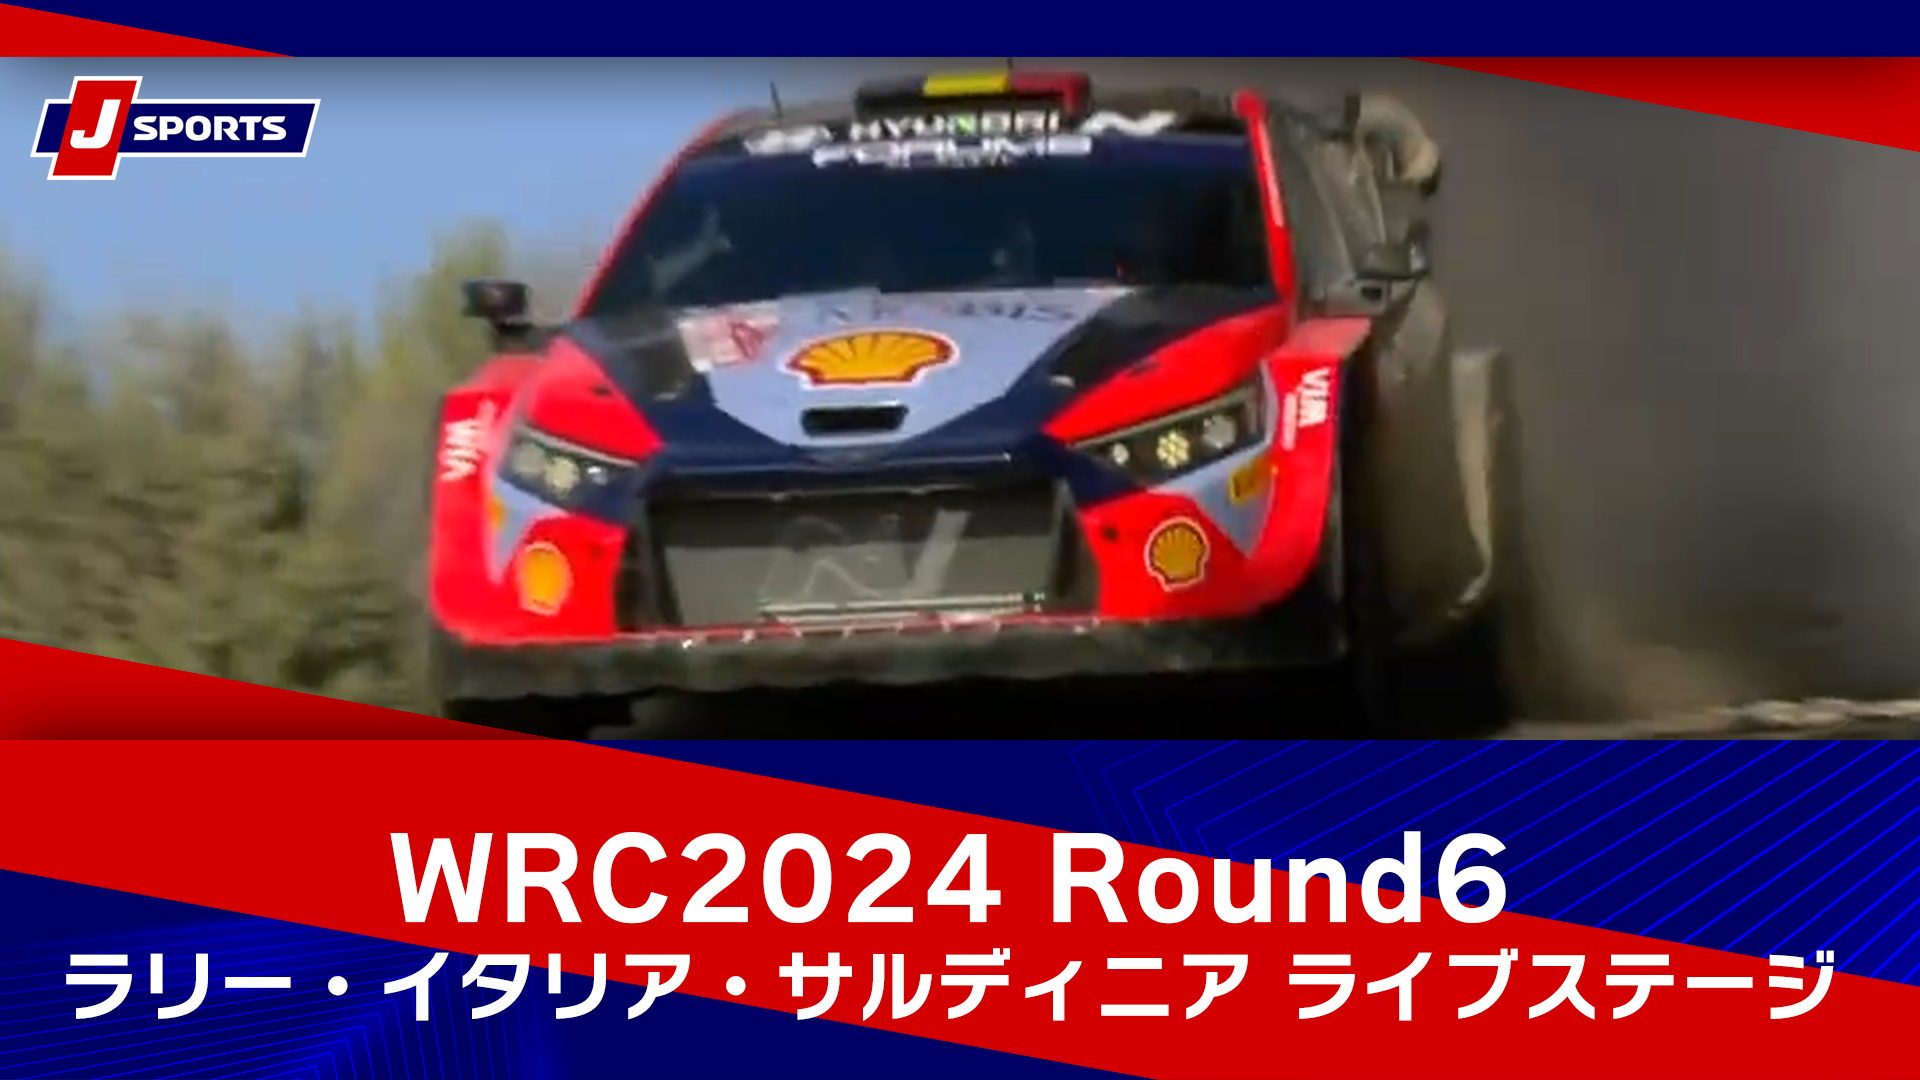 【ハイライト】WRC世界ラリー選手権 2024 Round6 ラリー・イタリア・サルディニア ライブステージ【SS12】 #wrc